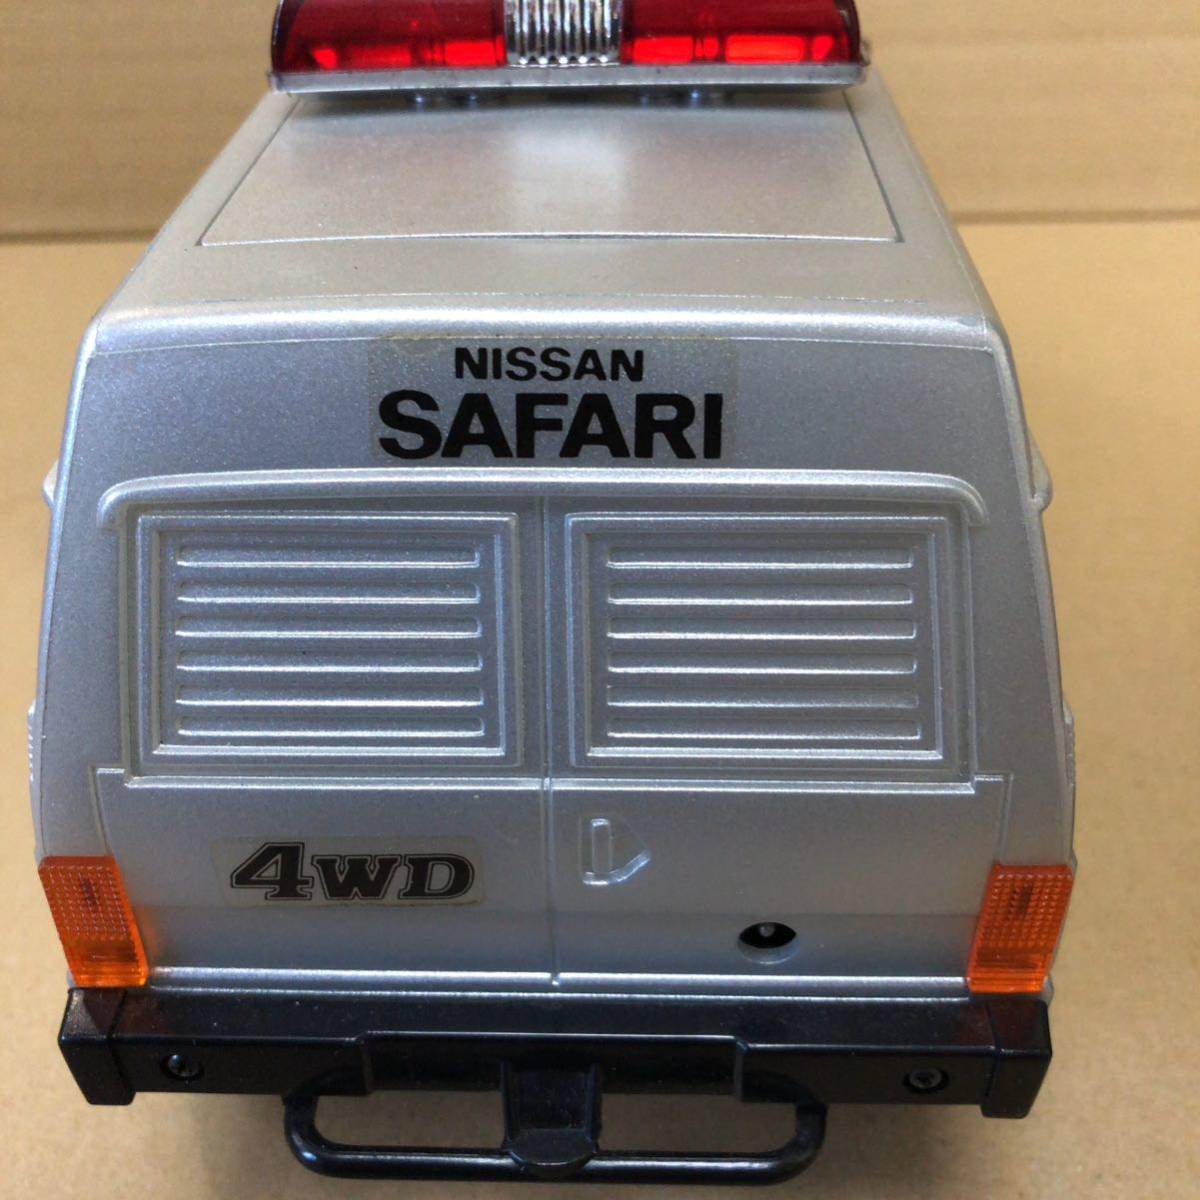 ヨネザワ 西部警察 NISSAN SAFARI サファリ 4WD 1/16 ラジコン動作します_画像7